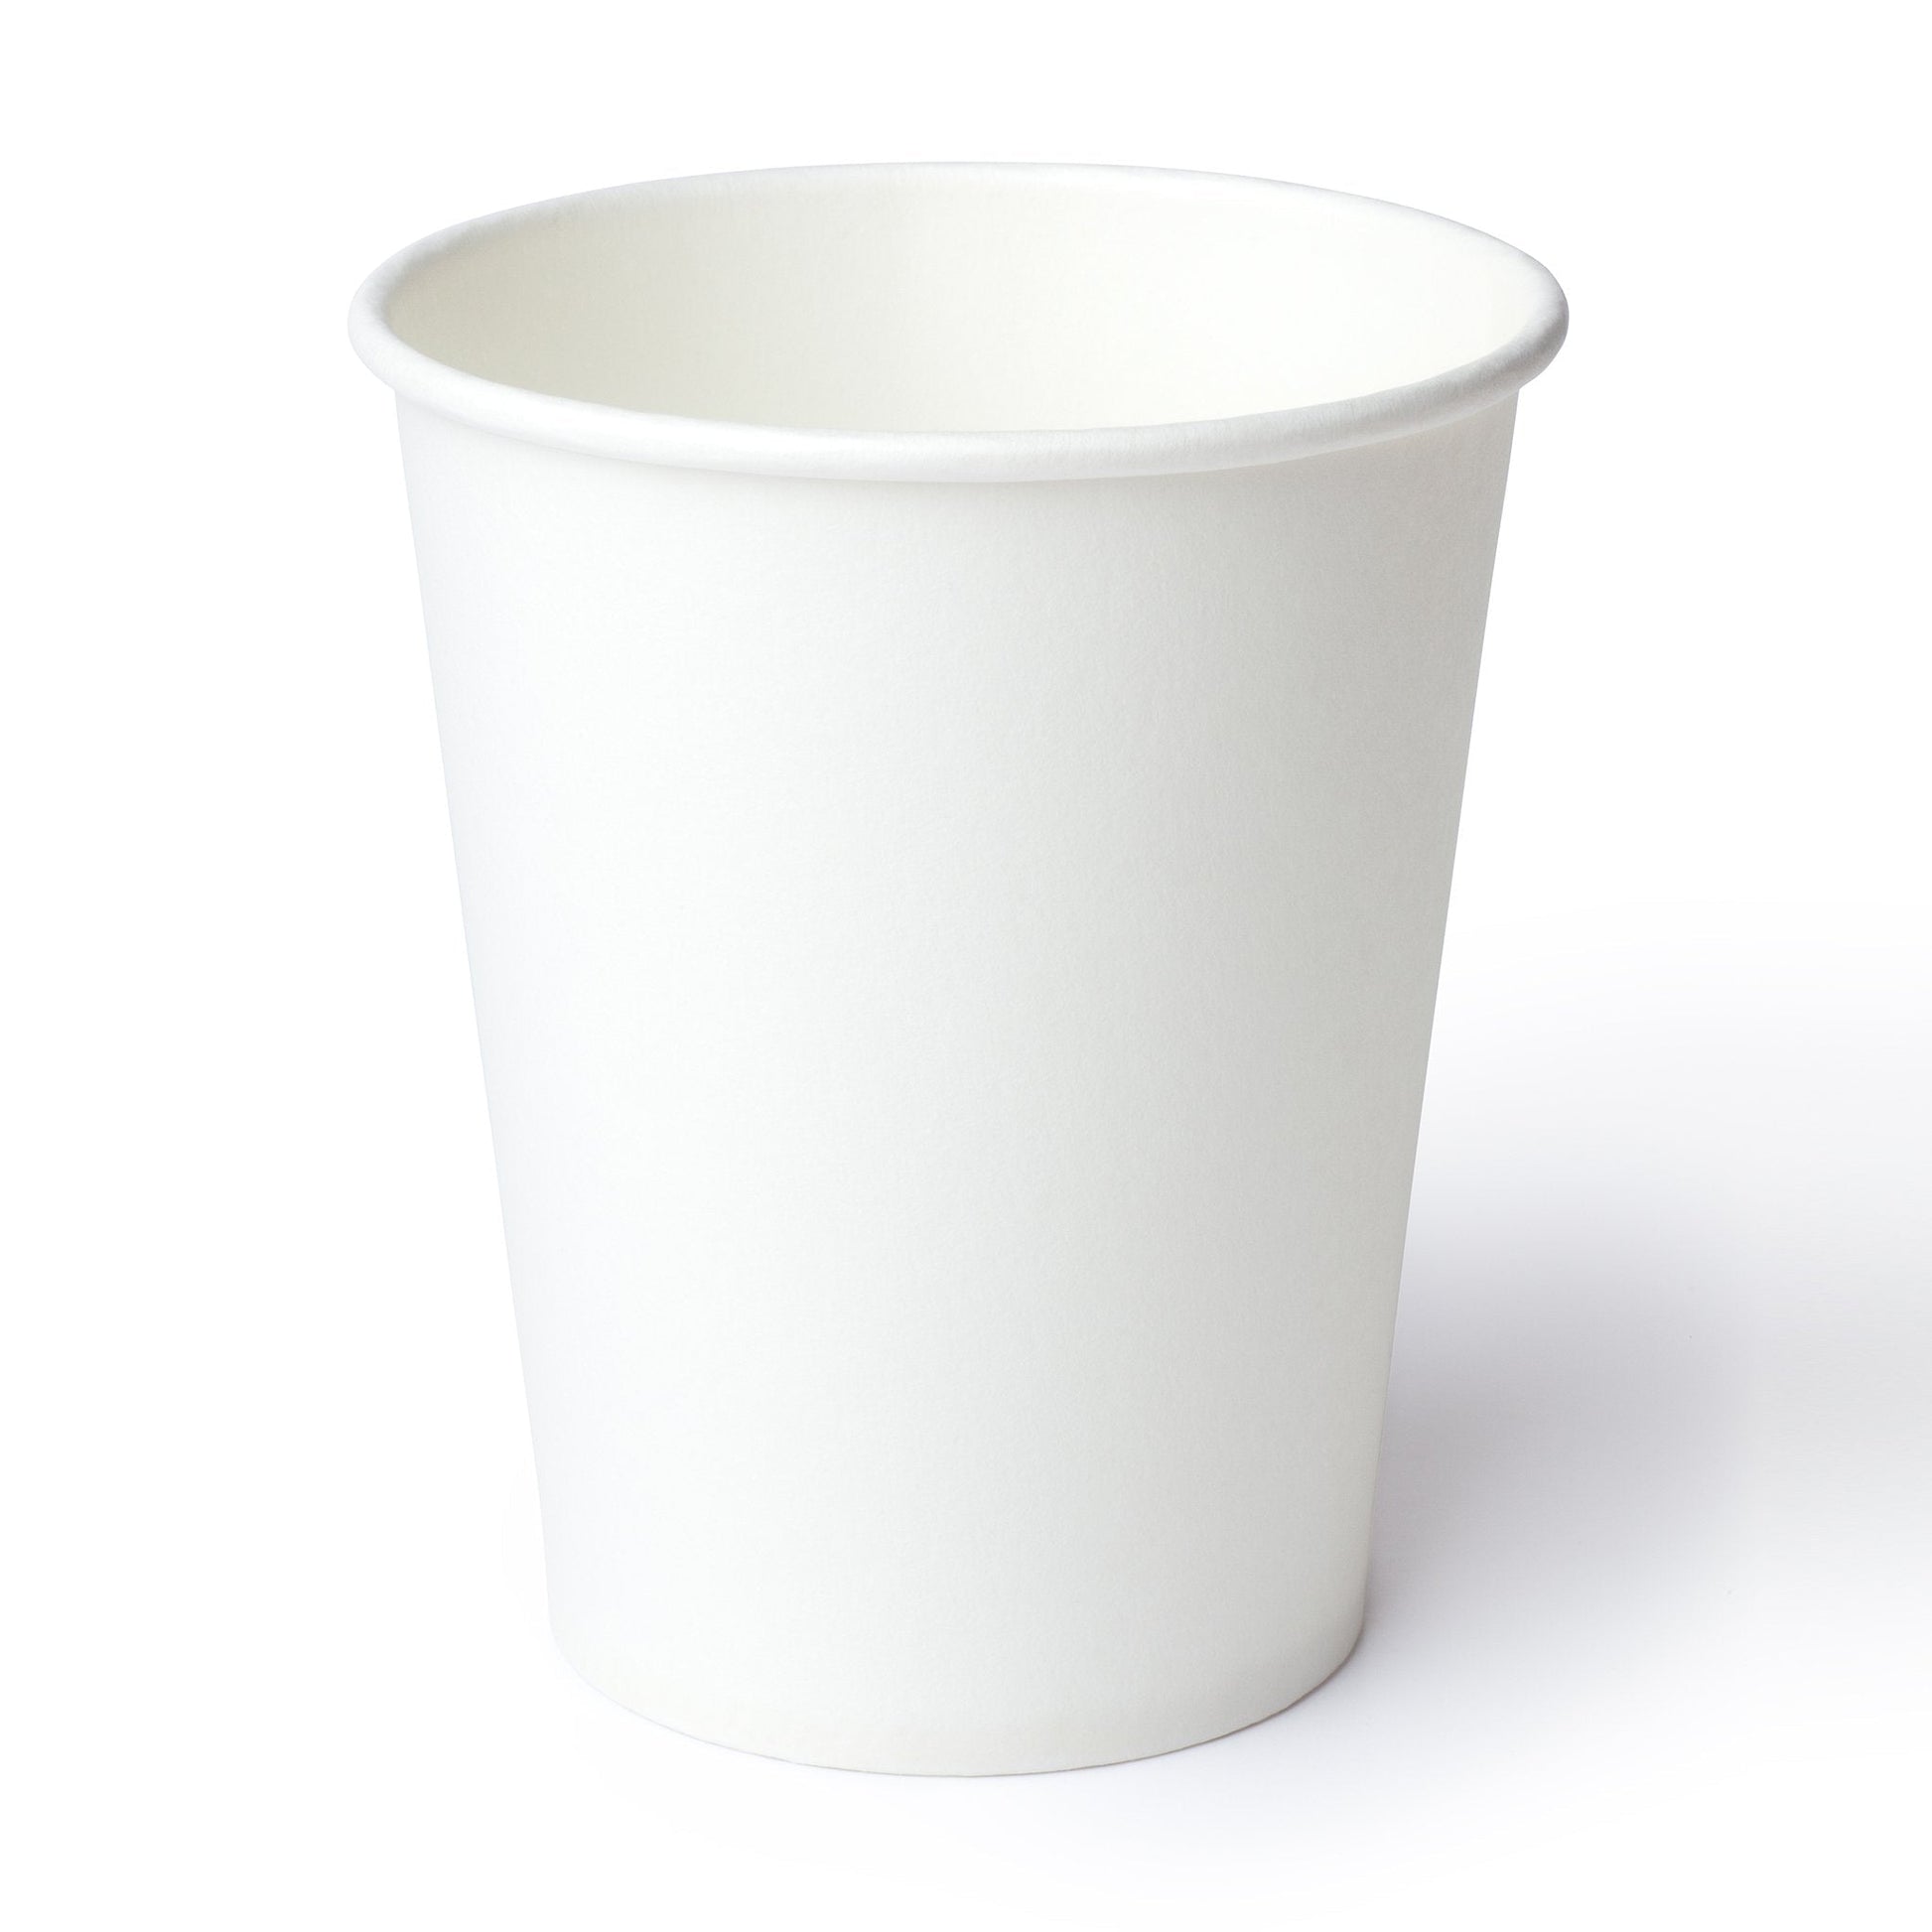 How You Brewin Friends White Ceramic Mug 20oz